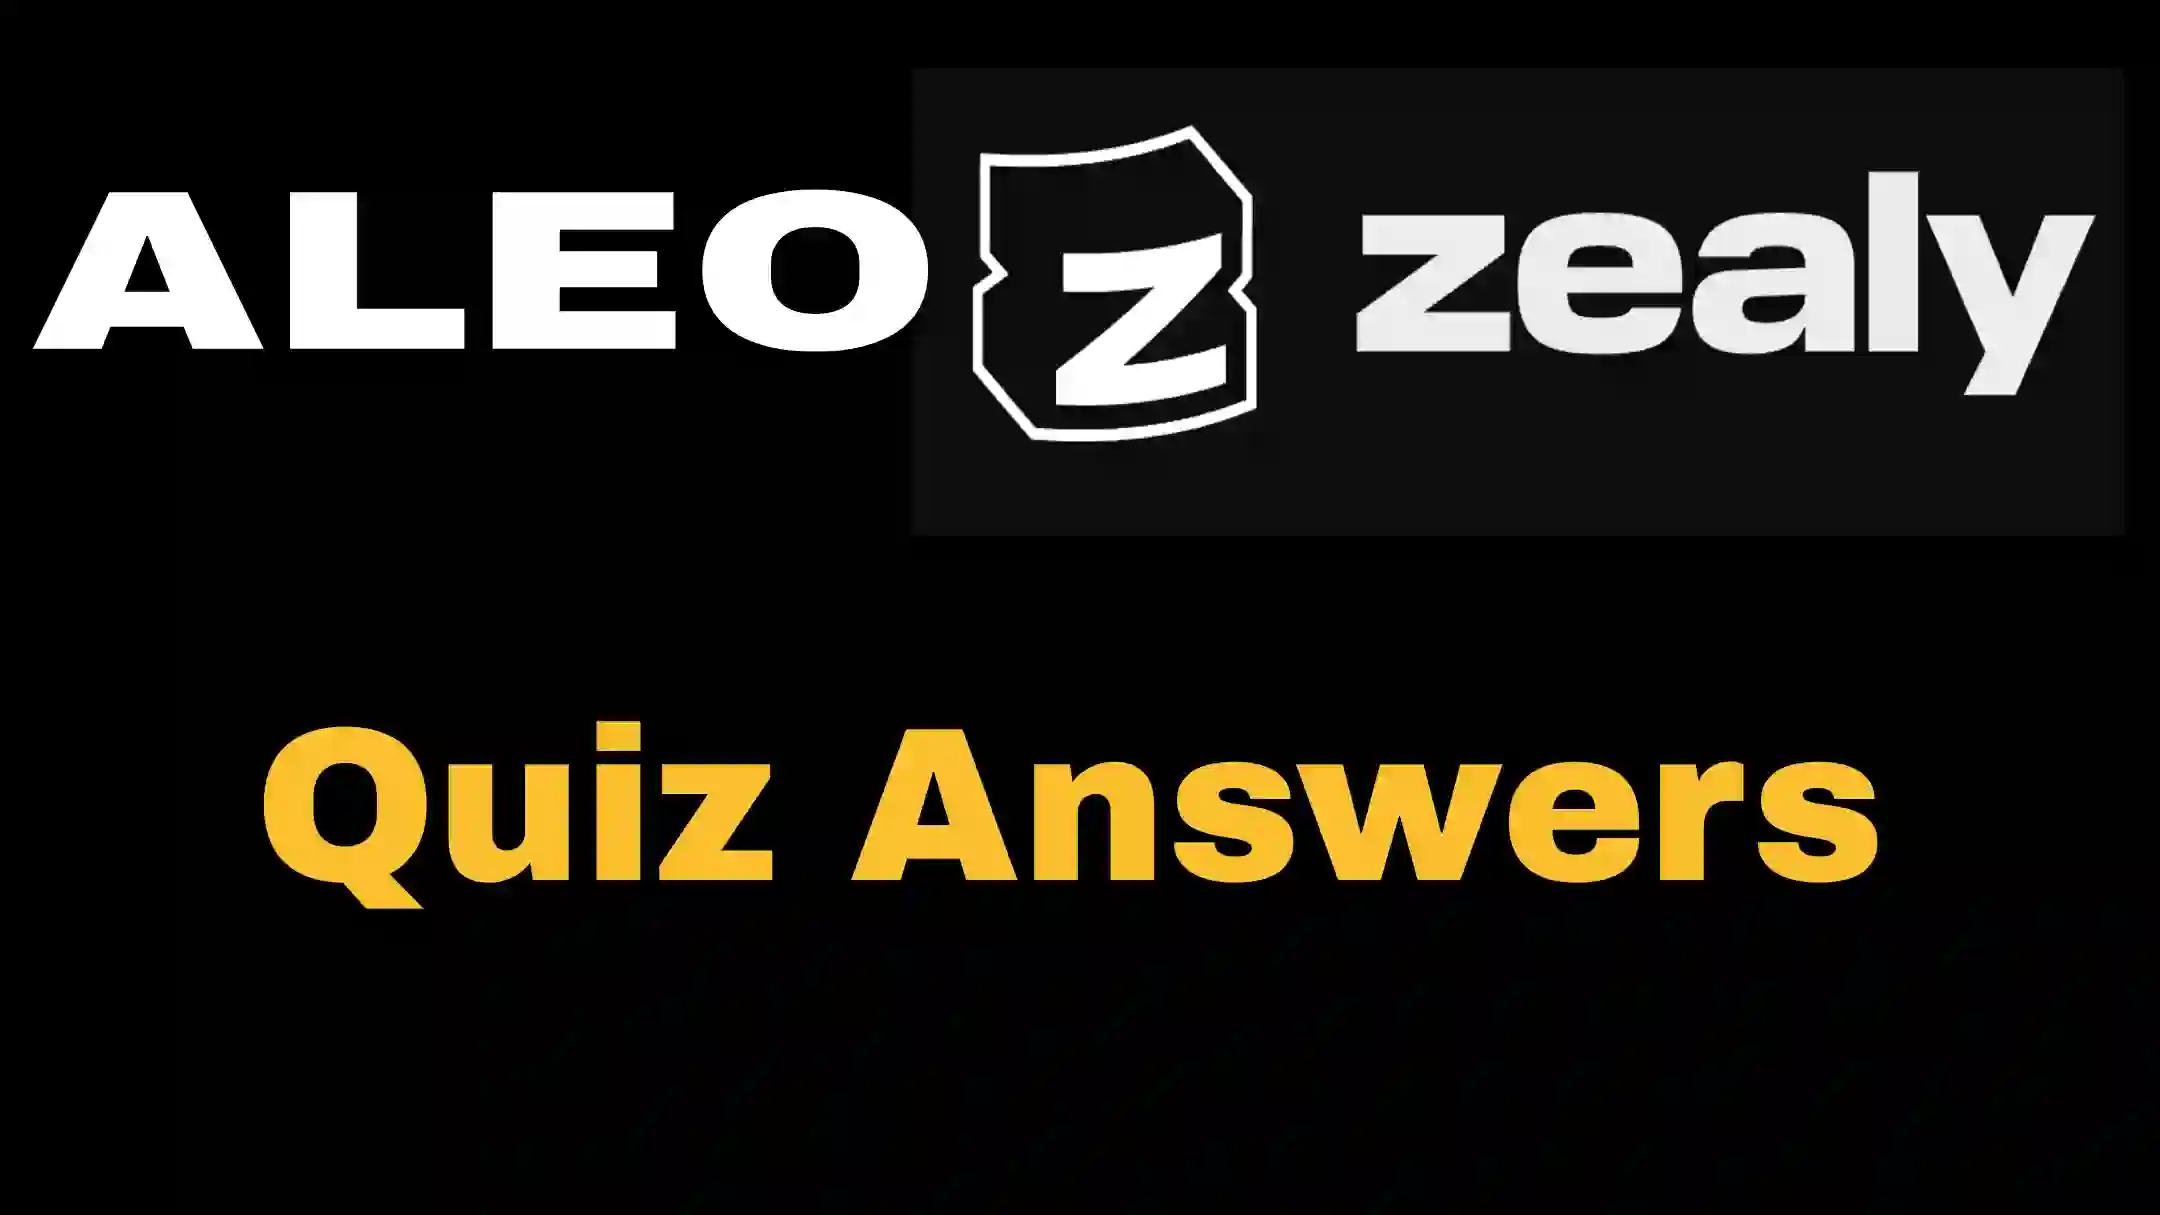 aleo zealy quiz answers today